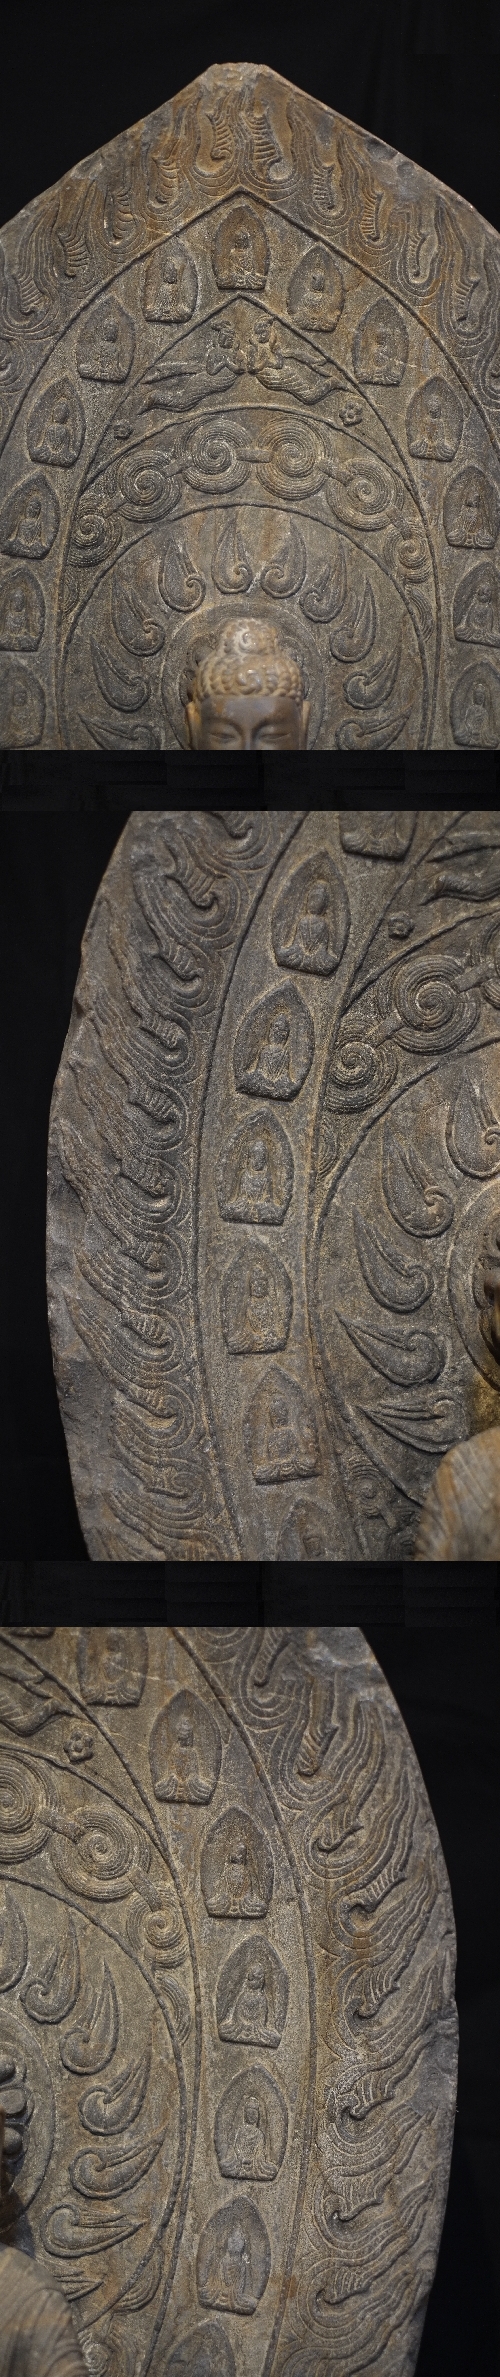 石造 交脚菩薩座像 北魏時代5世紀～6世紀 優美最上文物 :: ichian